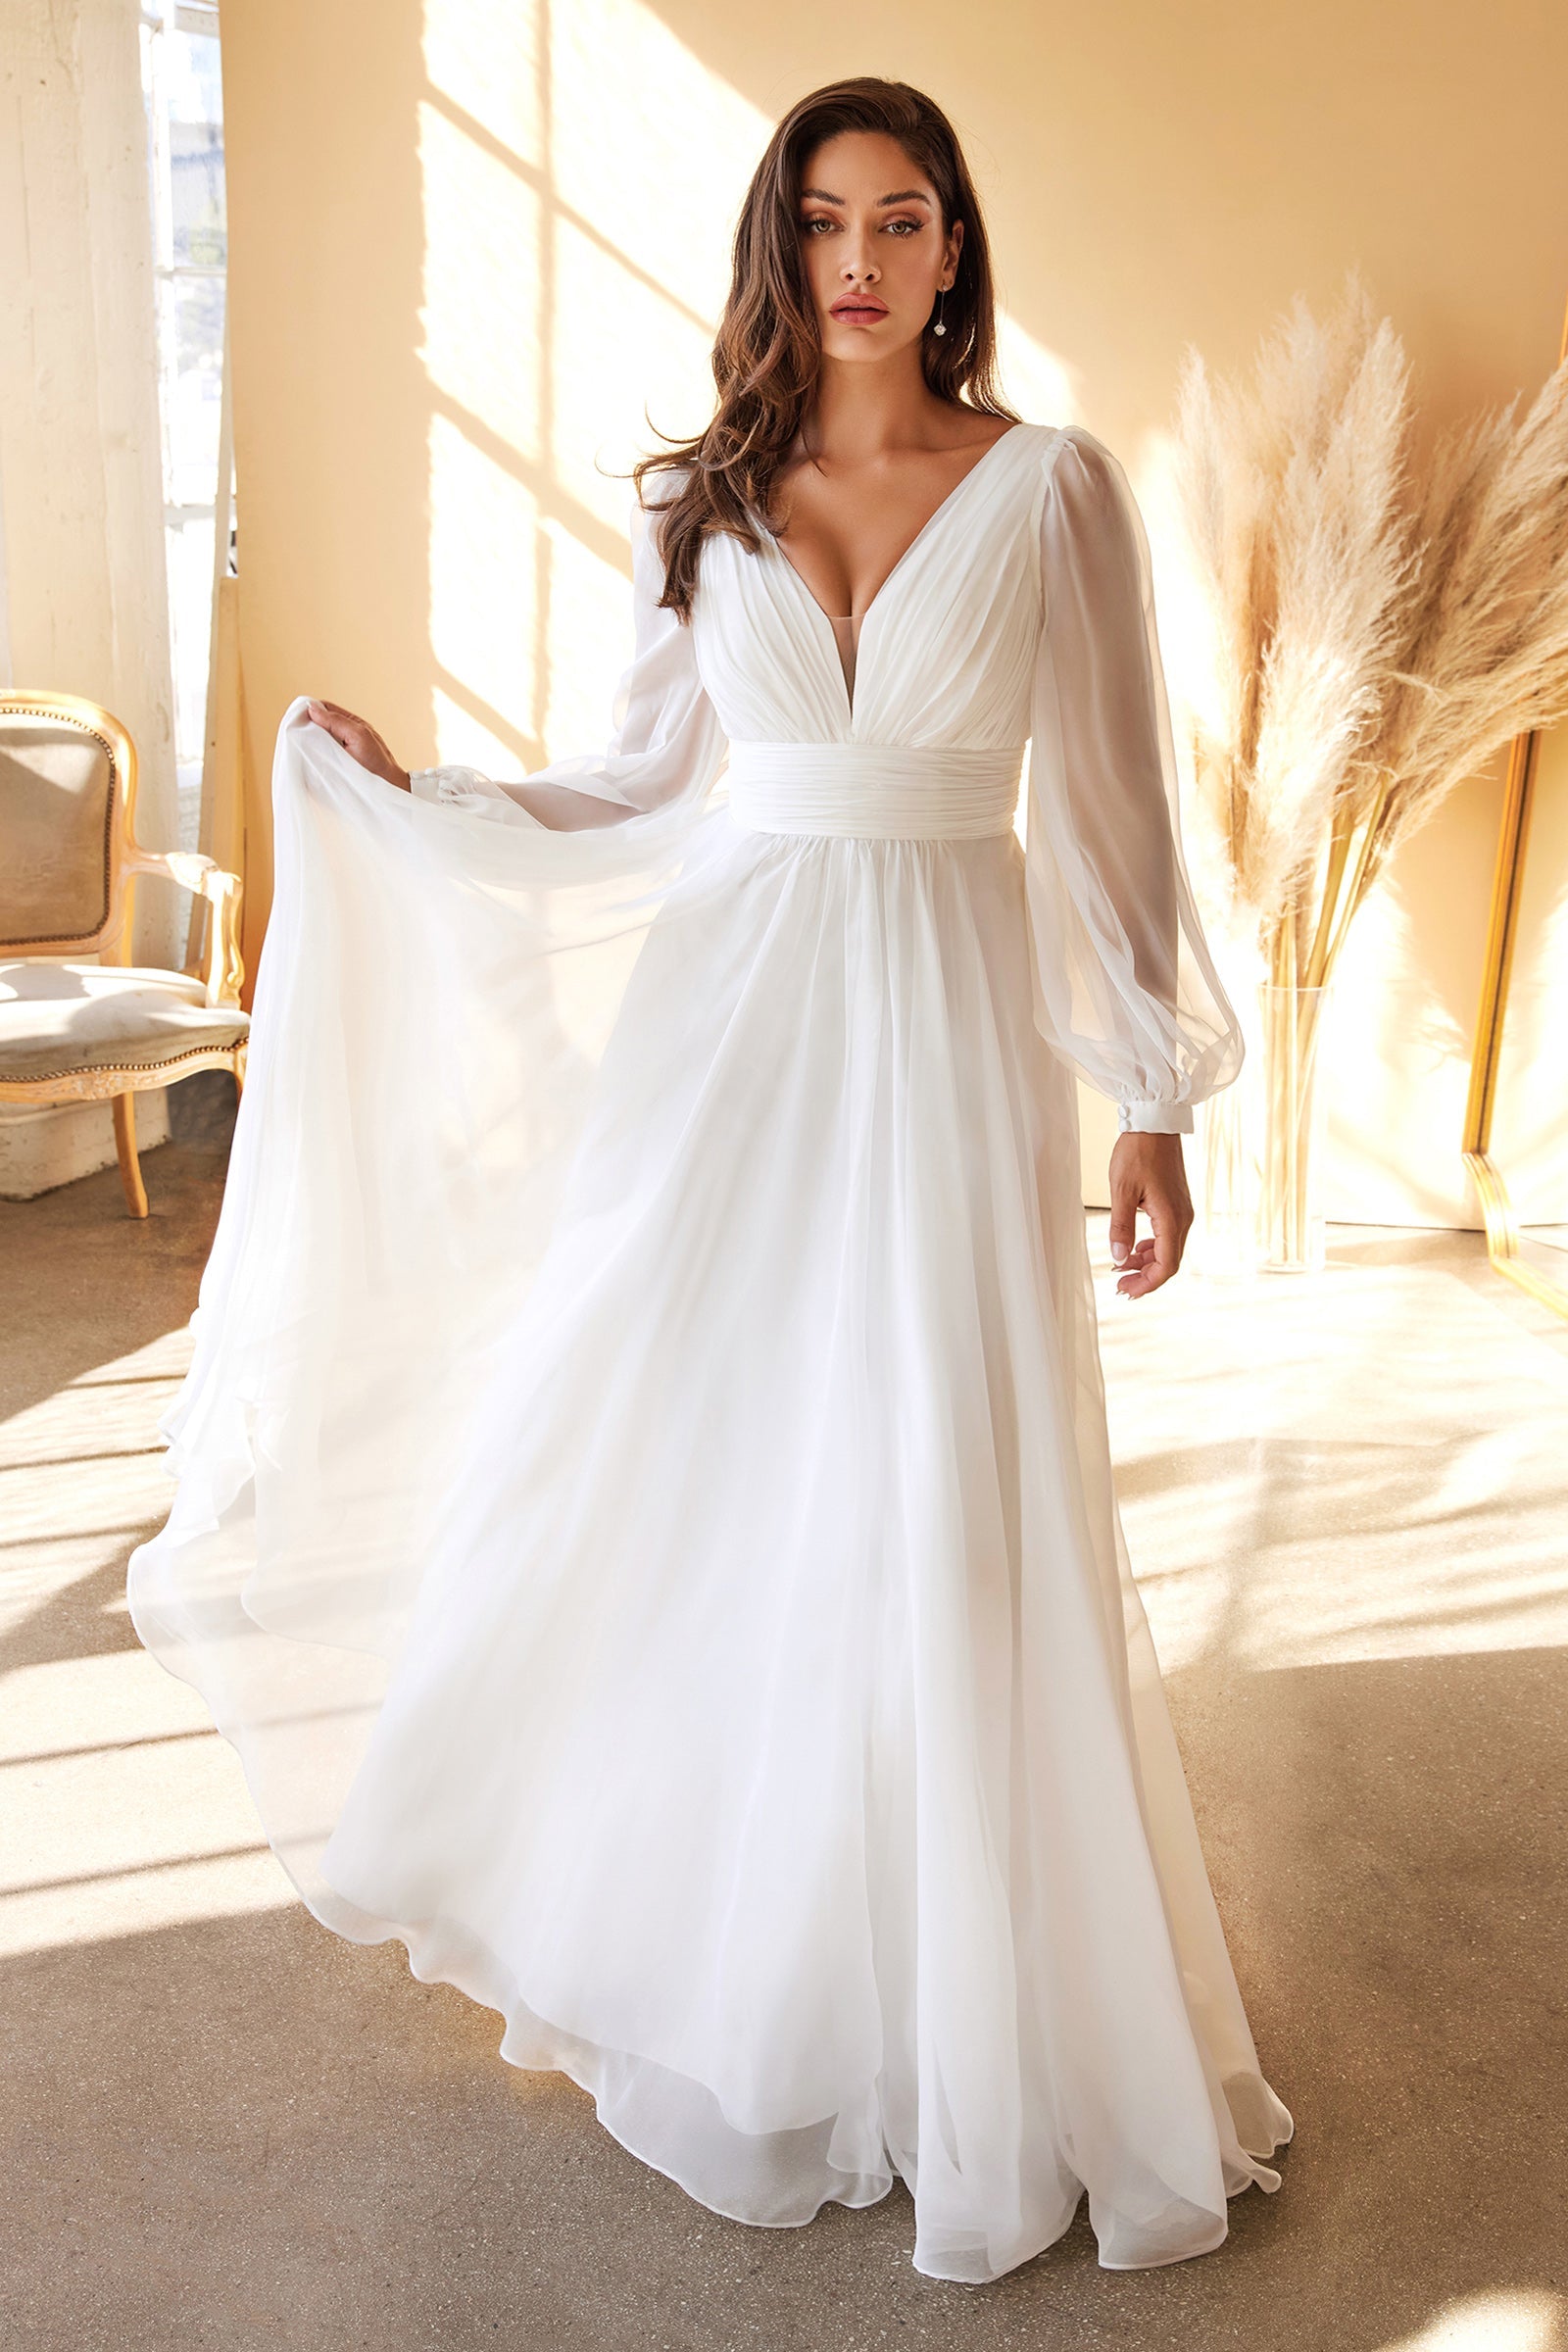 Long Sleeve Chiffon White Wedding Dress Plus Size Wedding Dresses UK